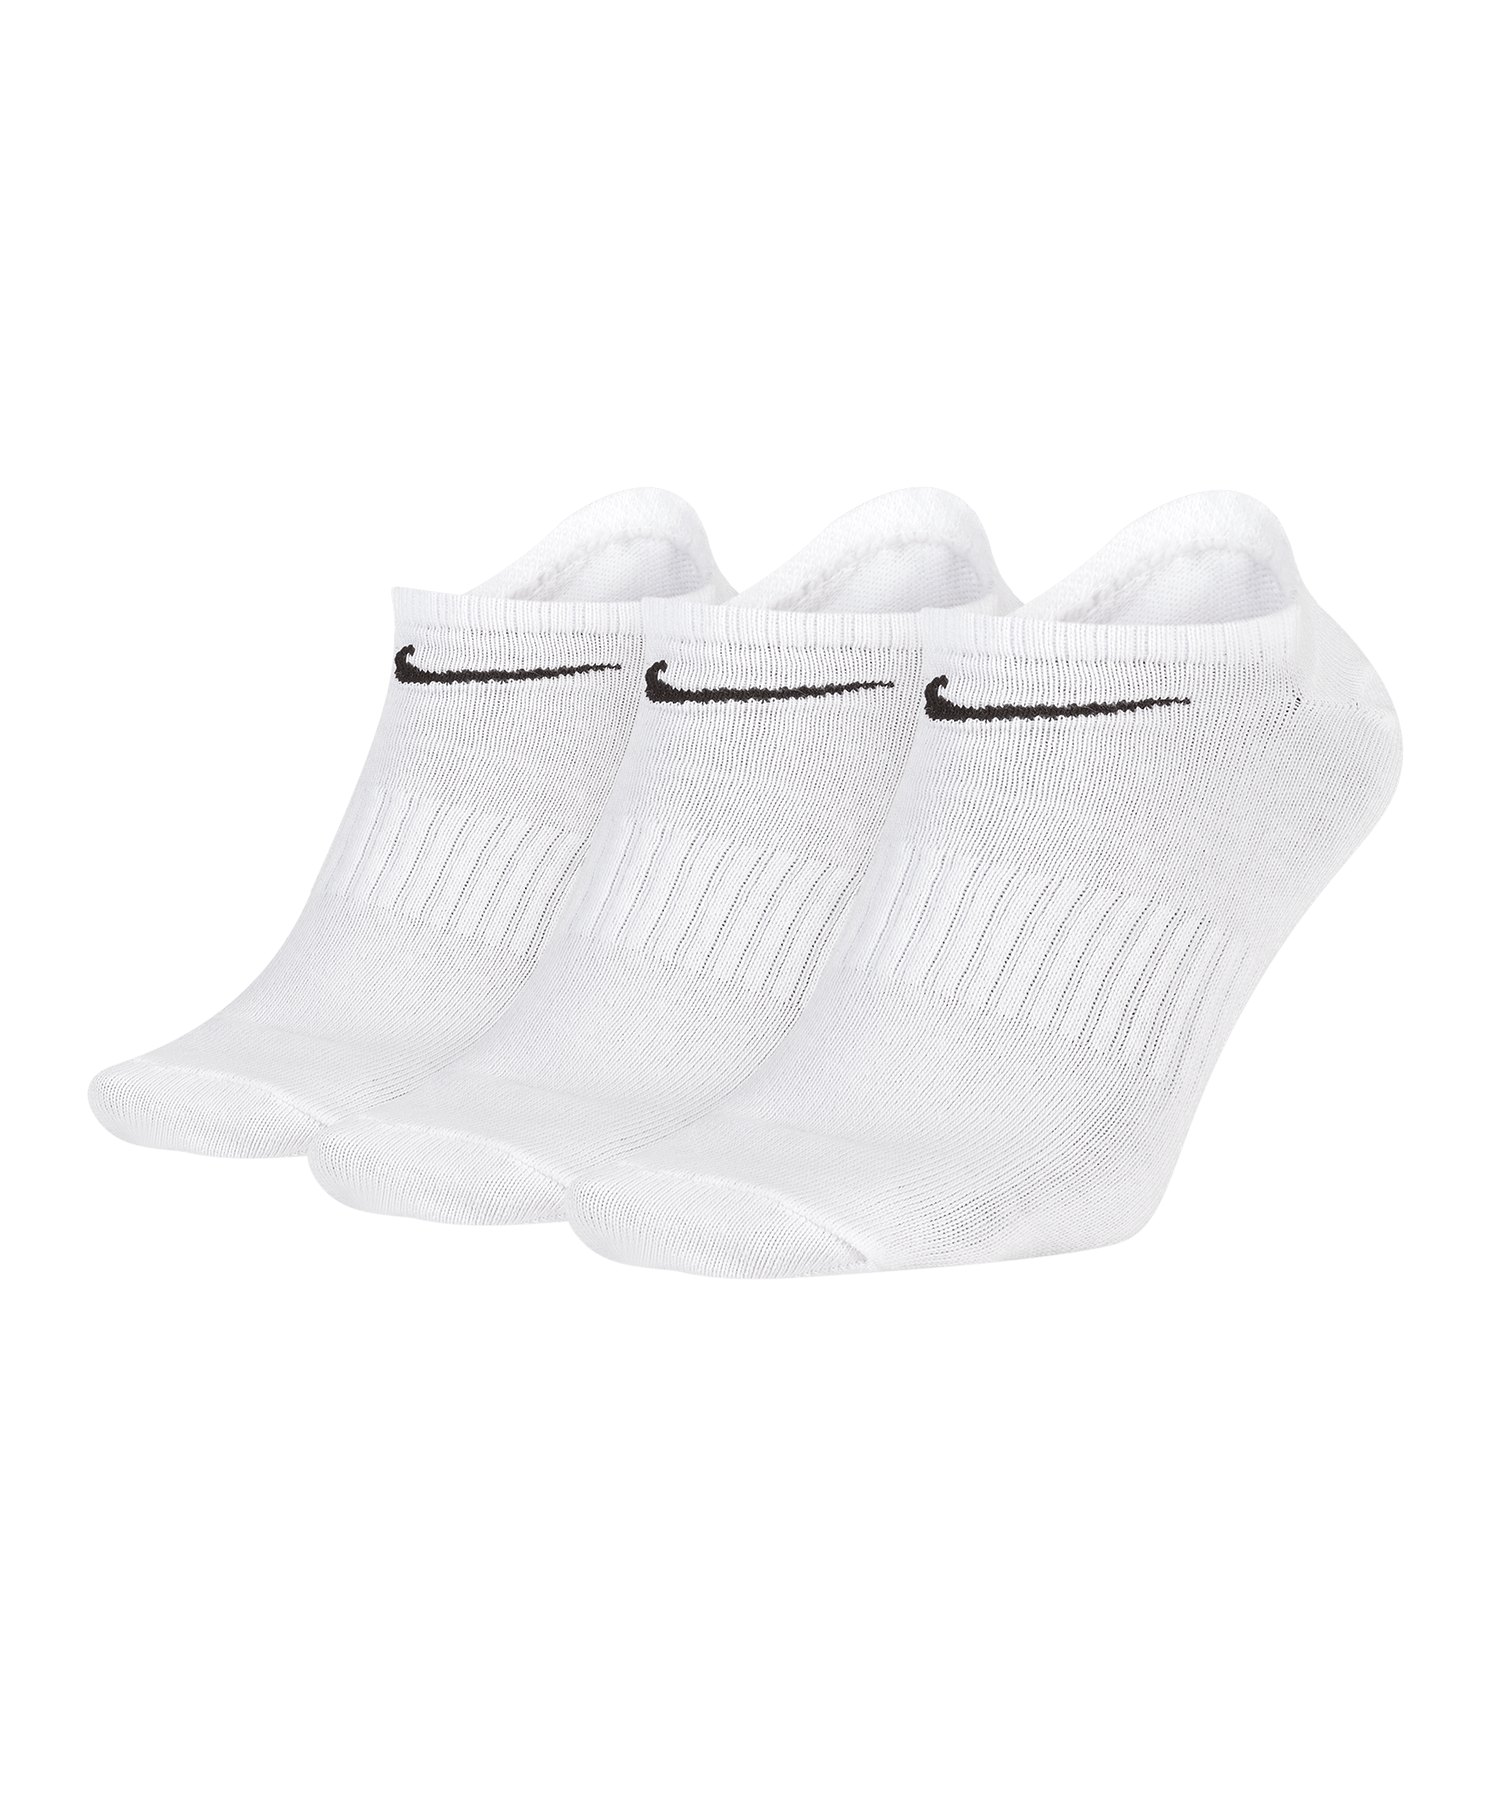 Nike Everyday LW No-Show Socken 3er Pack F100 - weiss